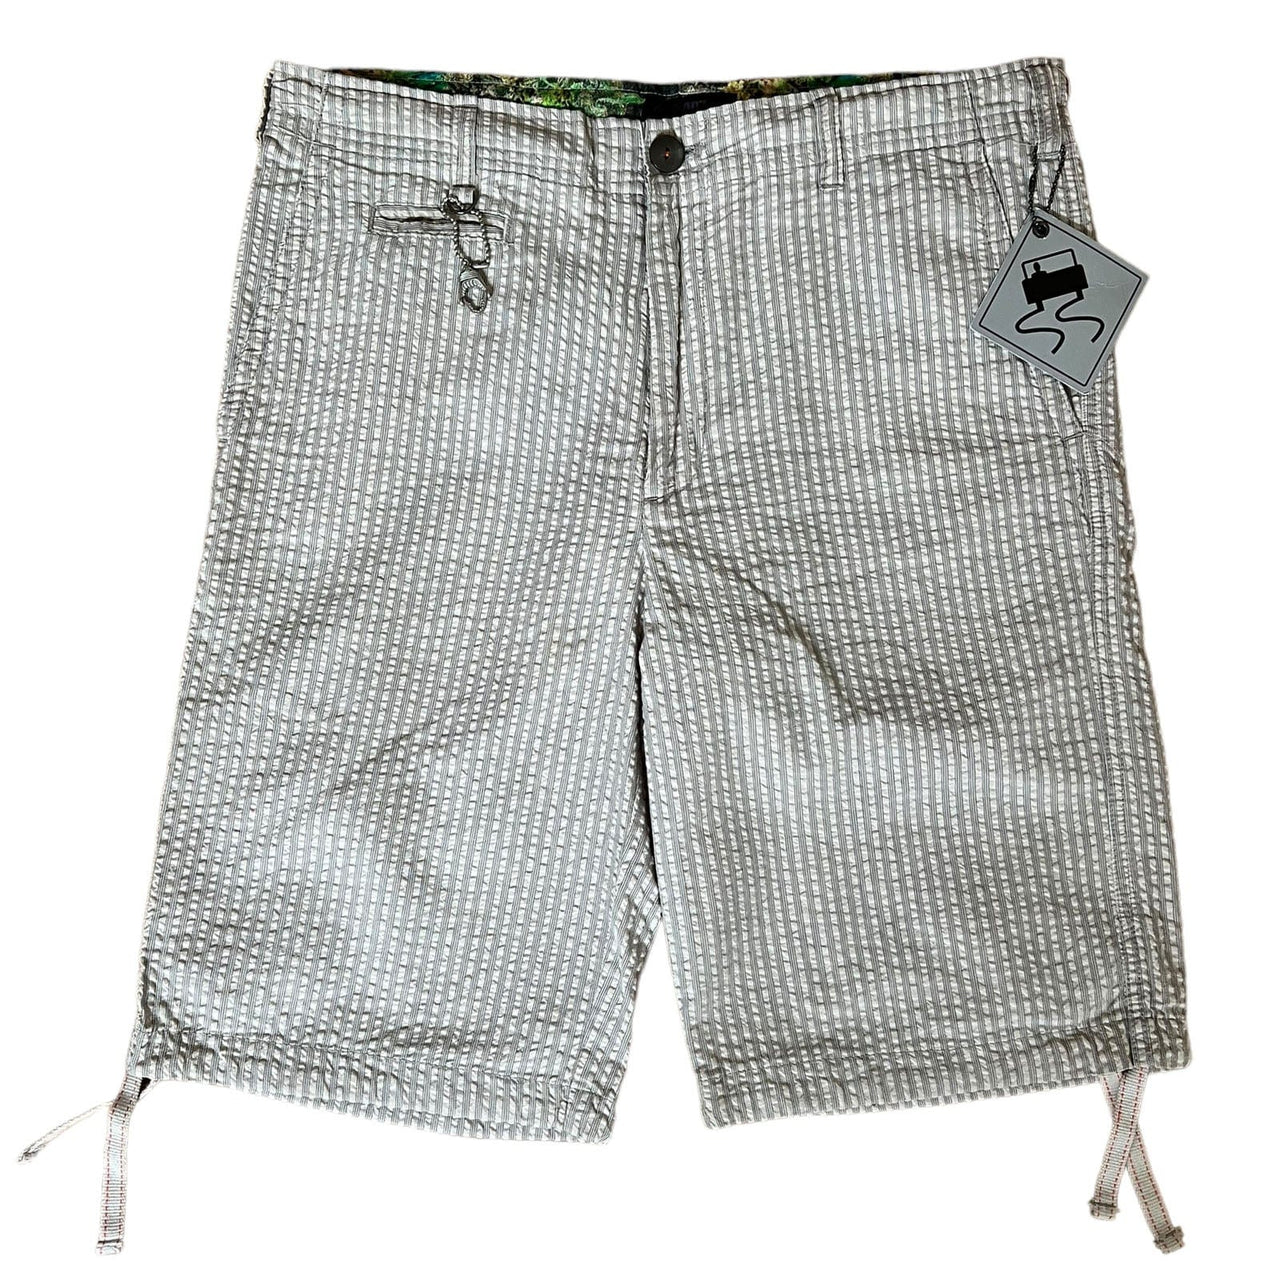 SKIDZ Shorts Seersucker Shorts - Natural Striped